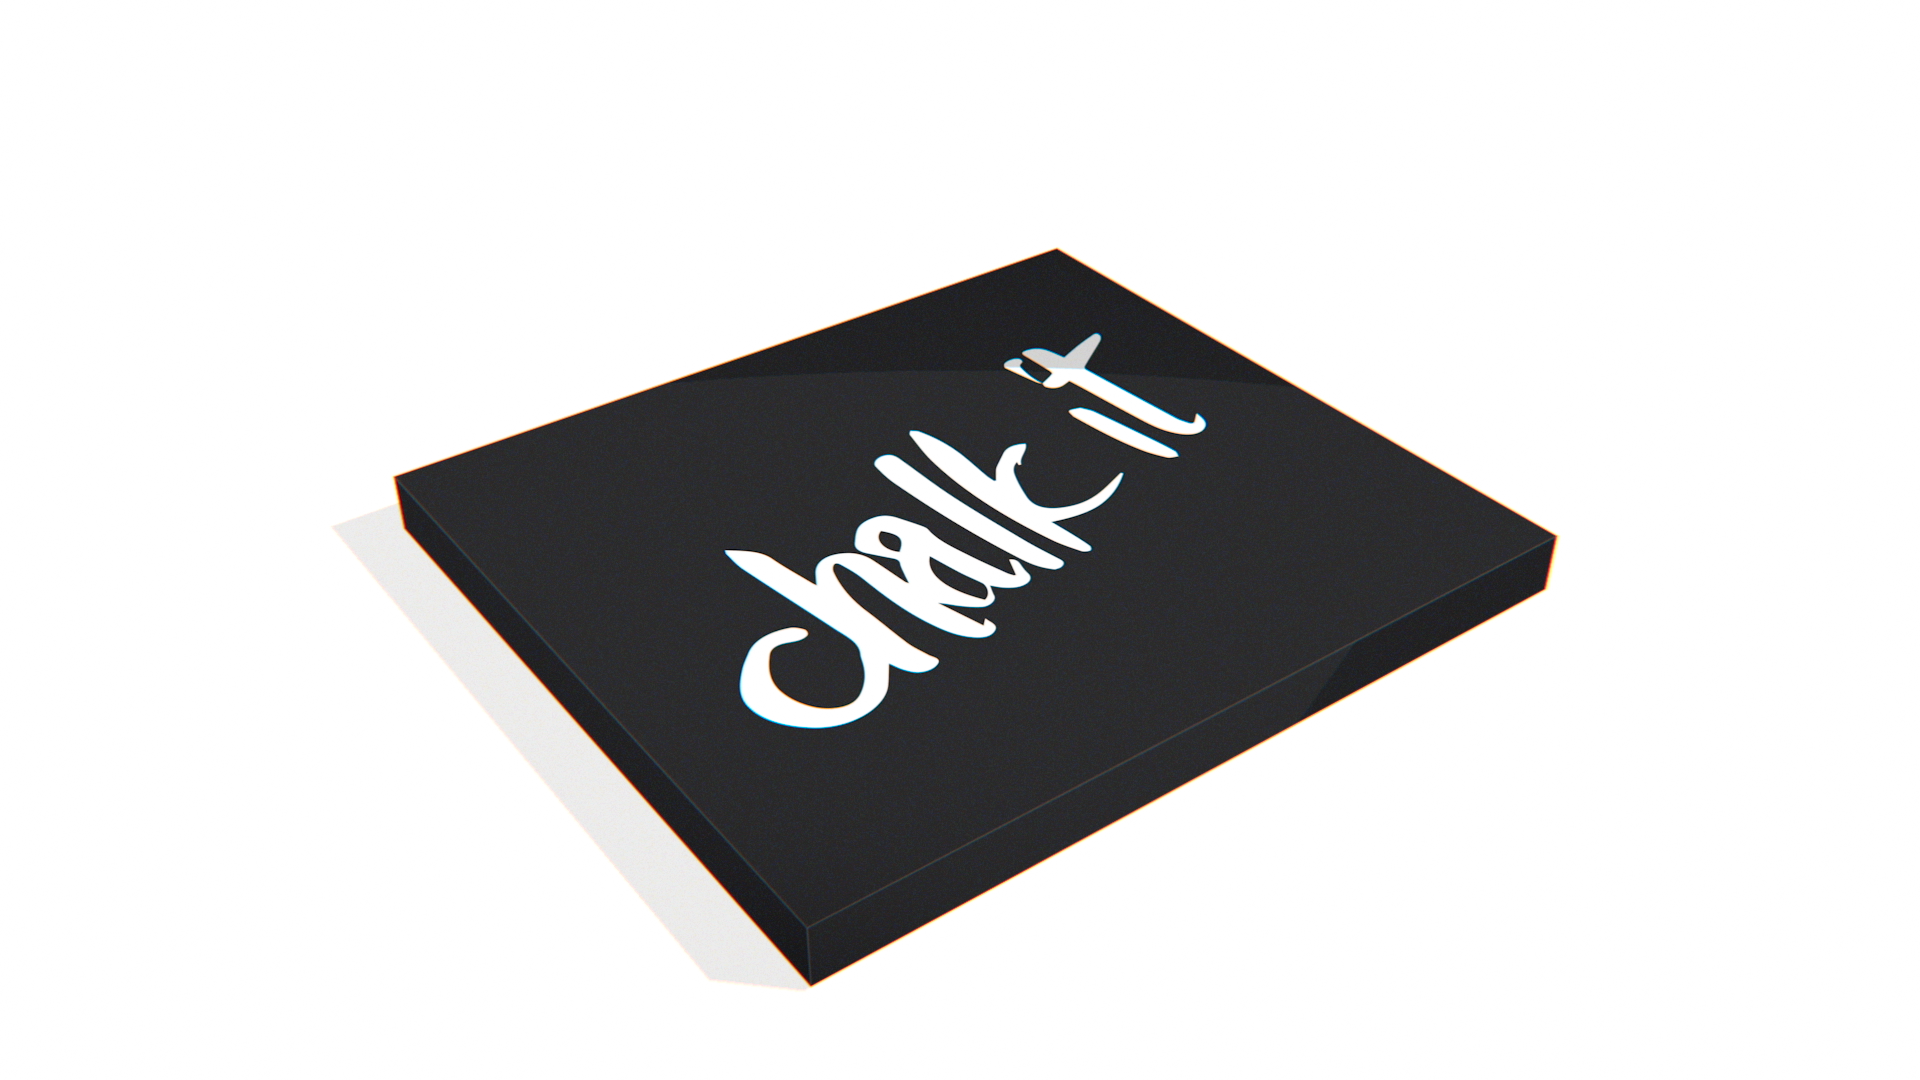 Das Bild zeigt die schwarze Chalk It Verpackung aus Karton in einer grafisch abstrahierten Form mit weissem Logoaufdruck.